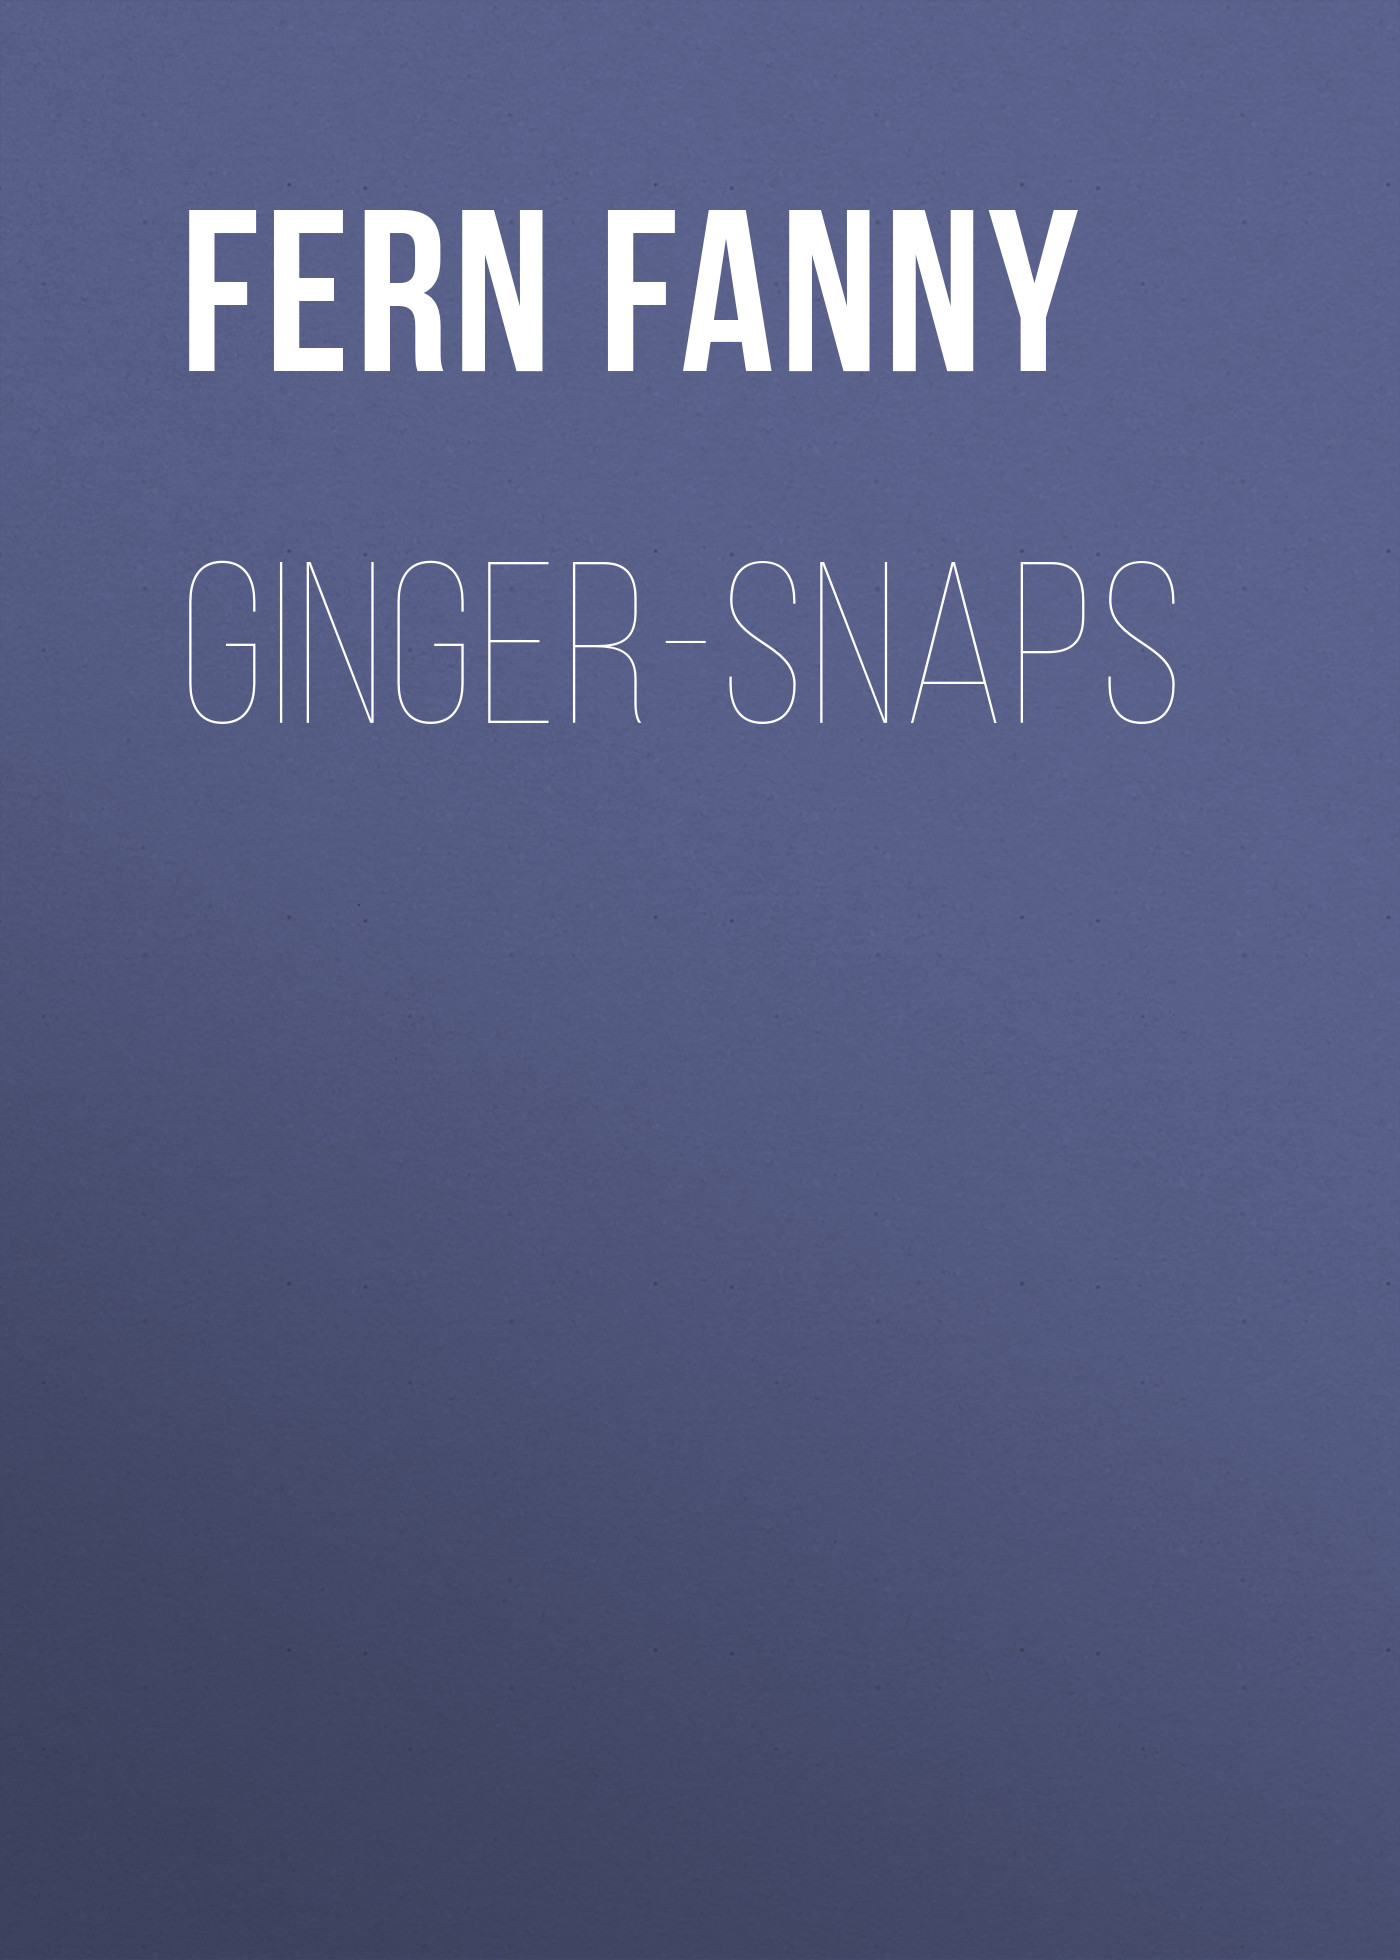 Книга Ginger-Snaps из серии , созданная Fanny Fern, может относится к жанру Литература 19 века, Зарубежная старинная литература, Зарубежная классика, Эссе. Стоимость электронной книги Ginger-Snaps с идентификатором 24727849 составляет 0 руб.